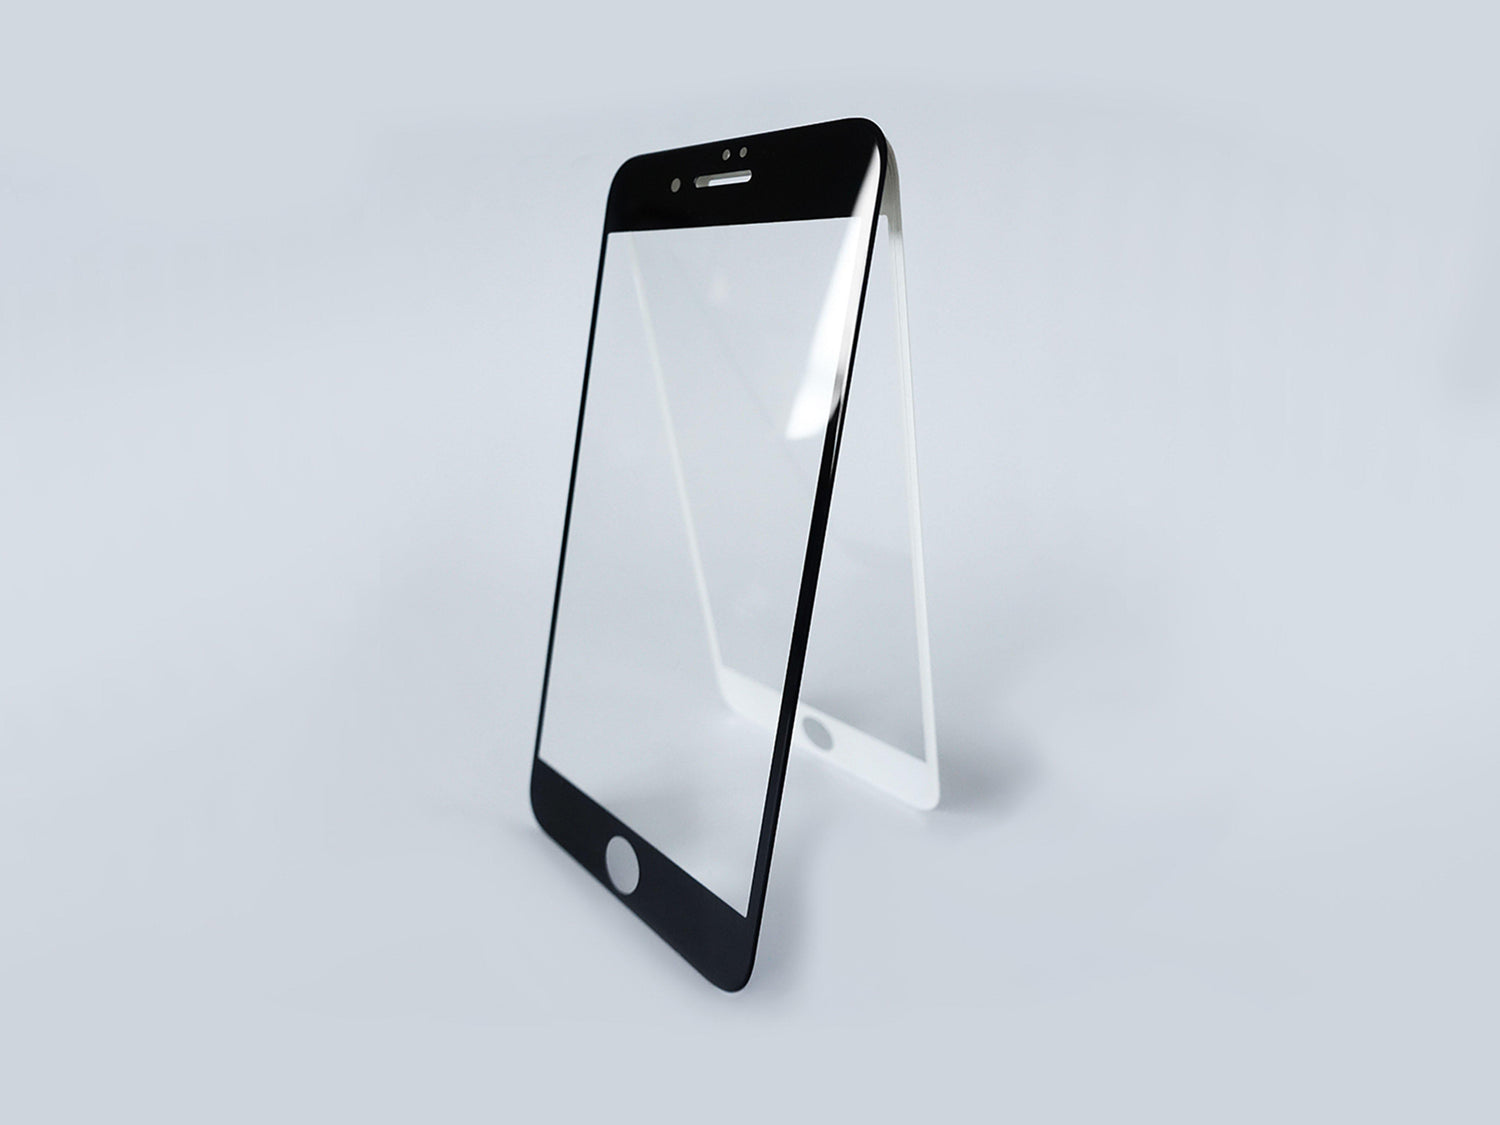 Glass Armor v2 - Beskyttelsesglas til iPhone - make it stick